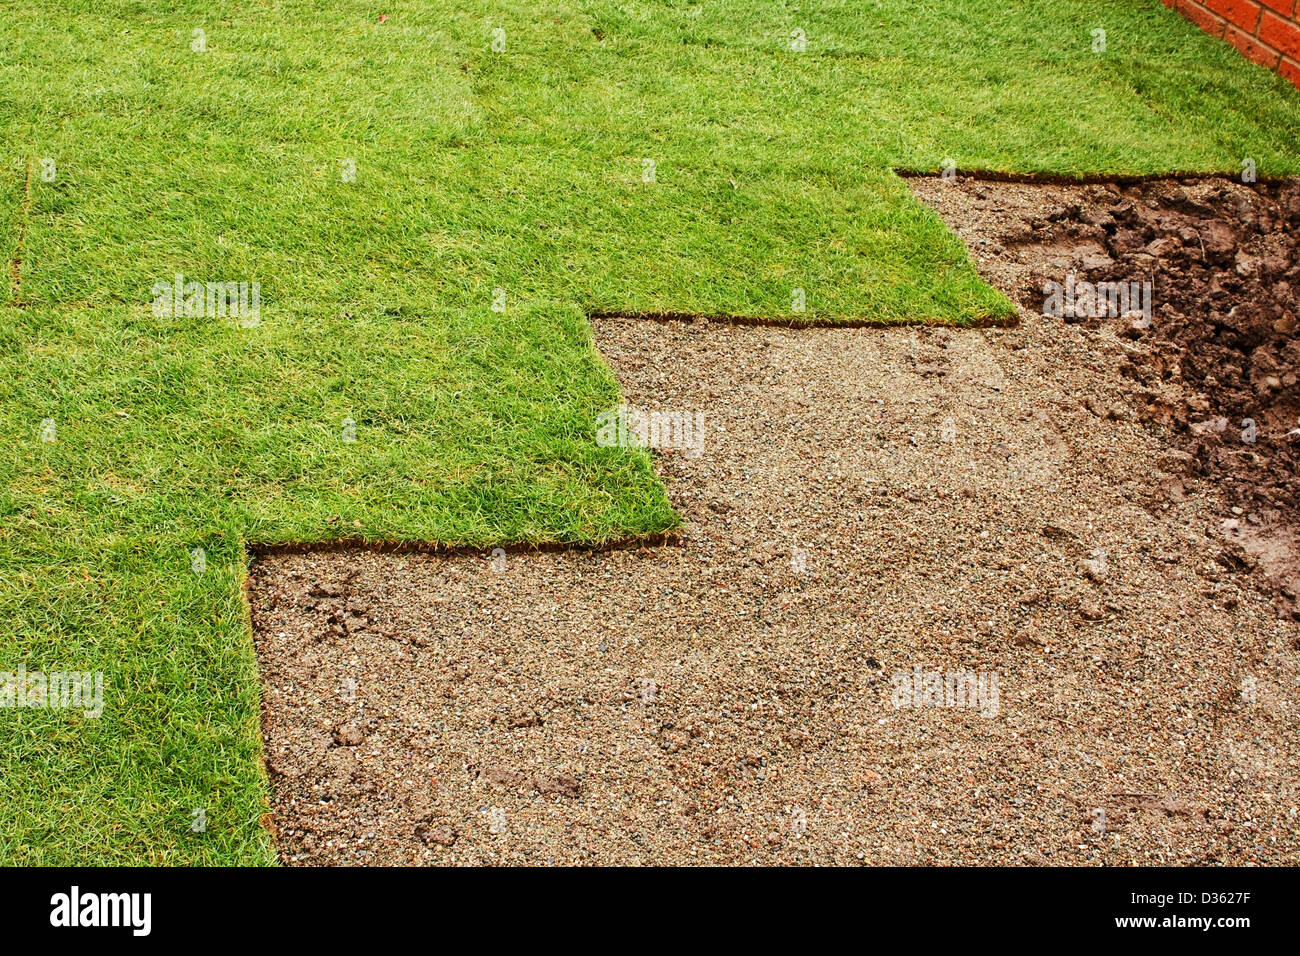 freshly layed turf at housing estate garden Stock Photo